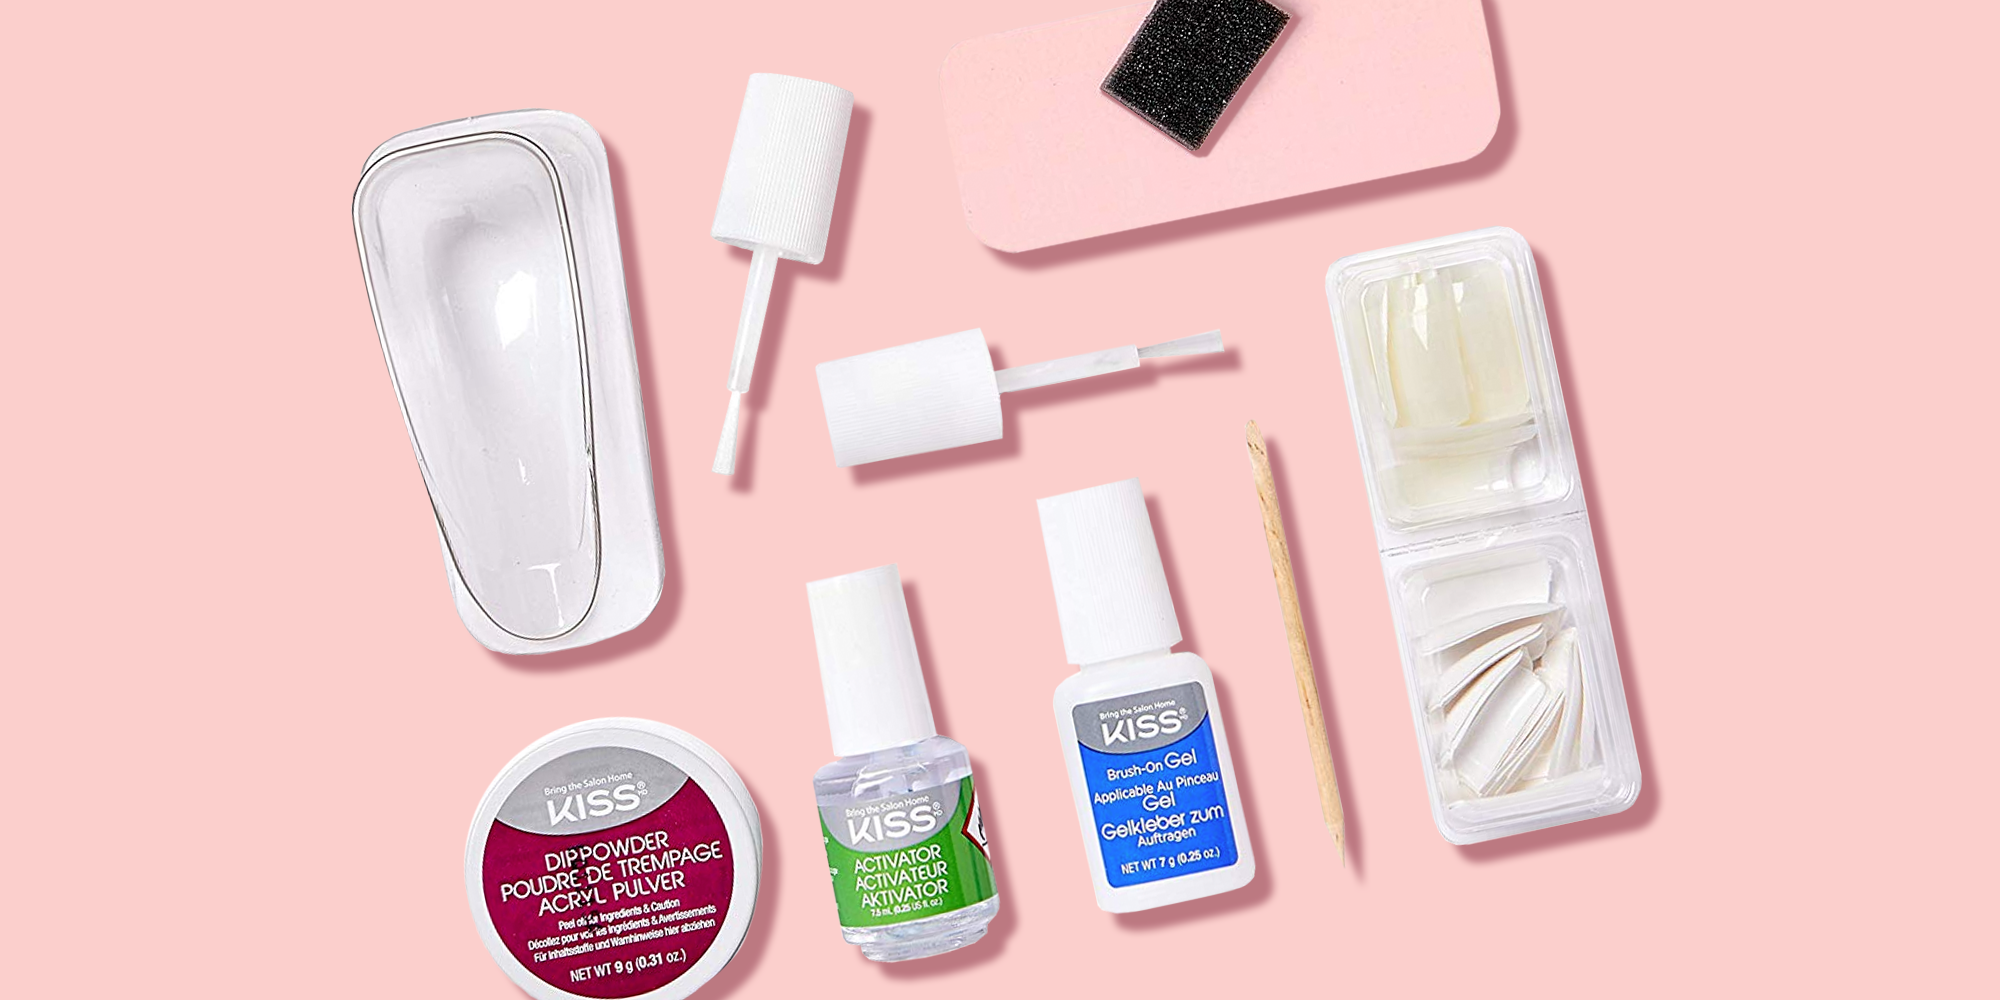 12 Best Dip Powder Nail Kits 21 Top Nail Dipping Powder Kits For At Home Manicures